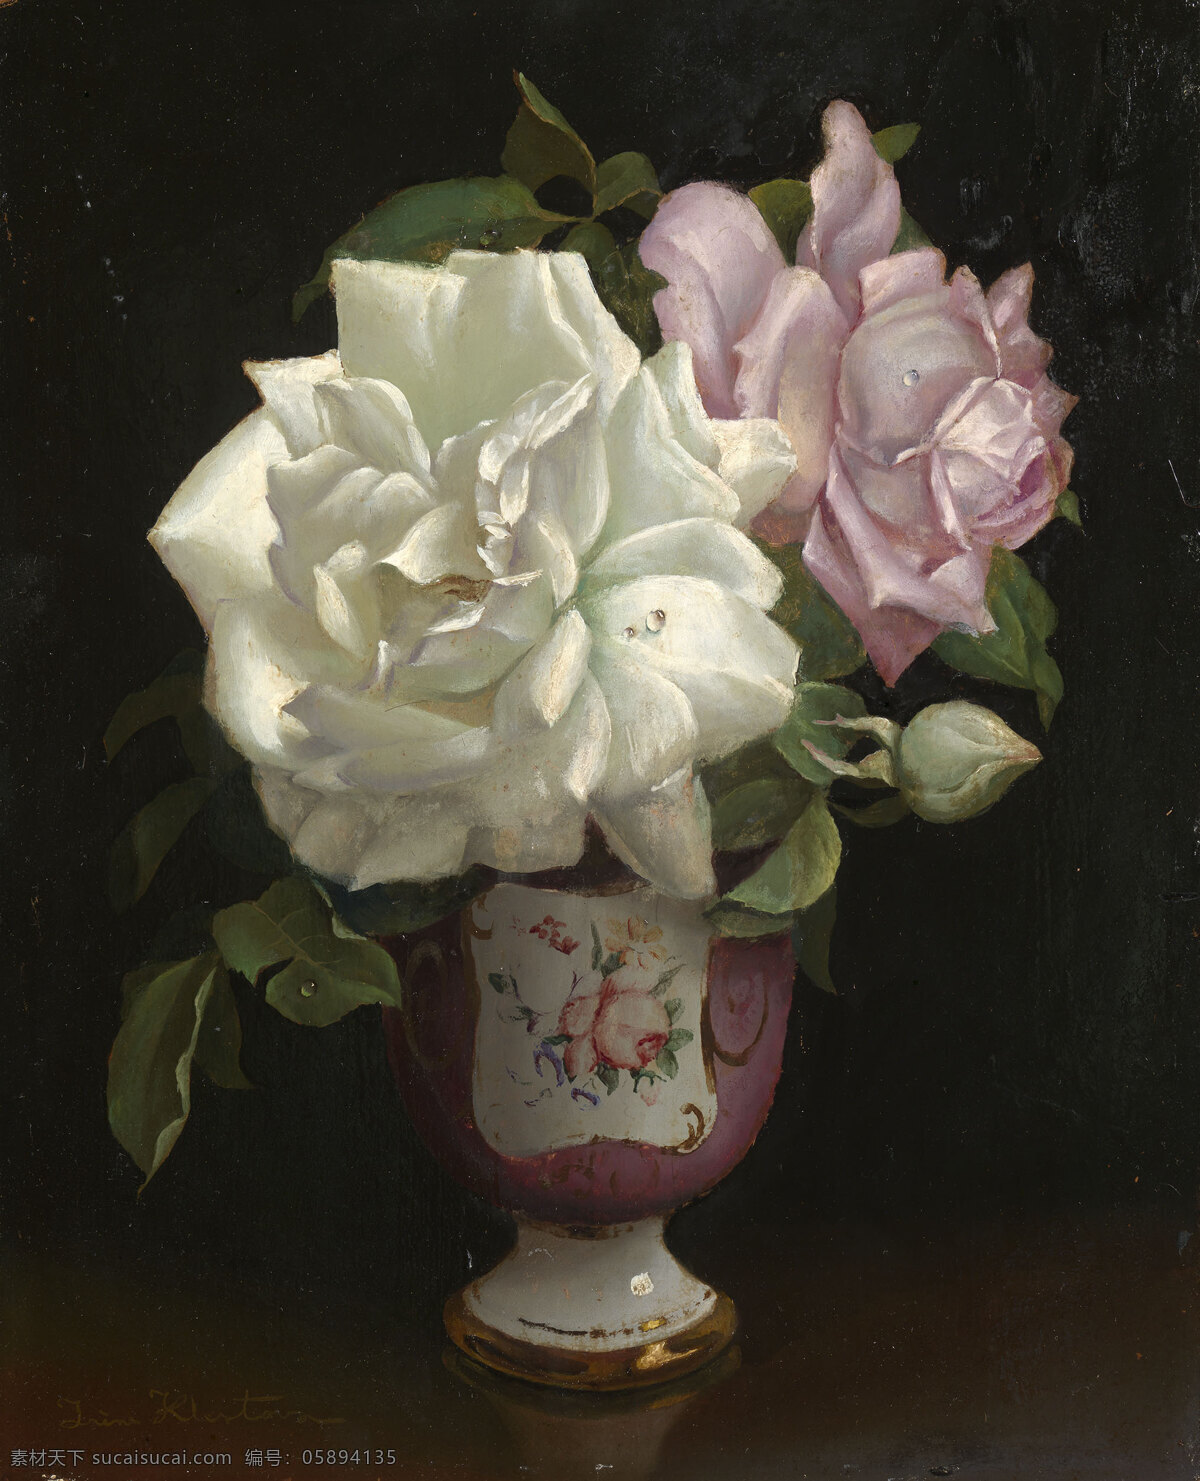 盛开的玫瑰 俄罗斯 女画家艾琳 作品 永恒之美 暗色调 珐琅花瓶 19世纪油画 油画 文化艺术 绘画书法